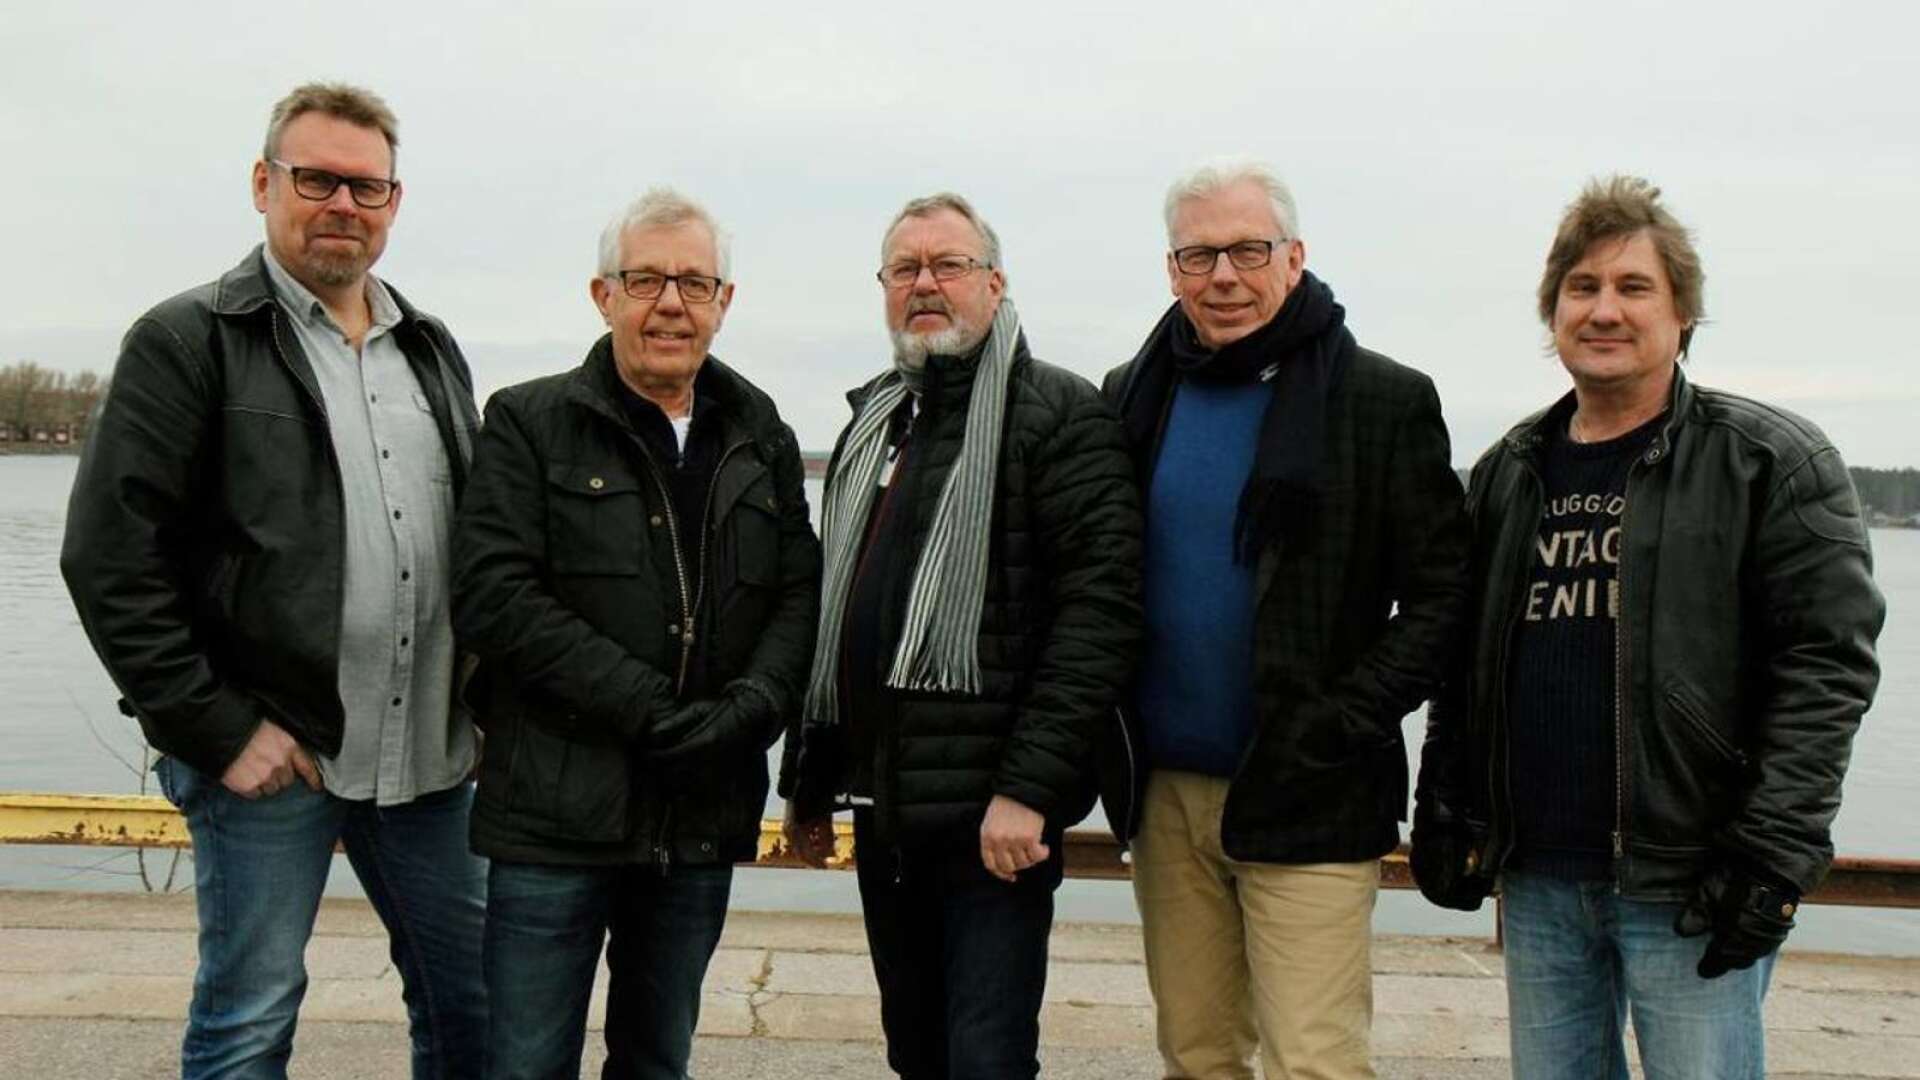 Dansbandet Saints som spelar på tisdag består av Thomas Andersson, Kent Peterson, Lars Bodqvist, Stefan Jacobson, Jimmy Östlund och Thor Anundsson, som inte är med på bilden.